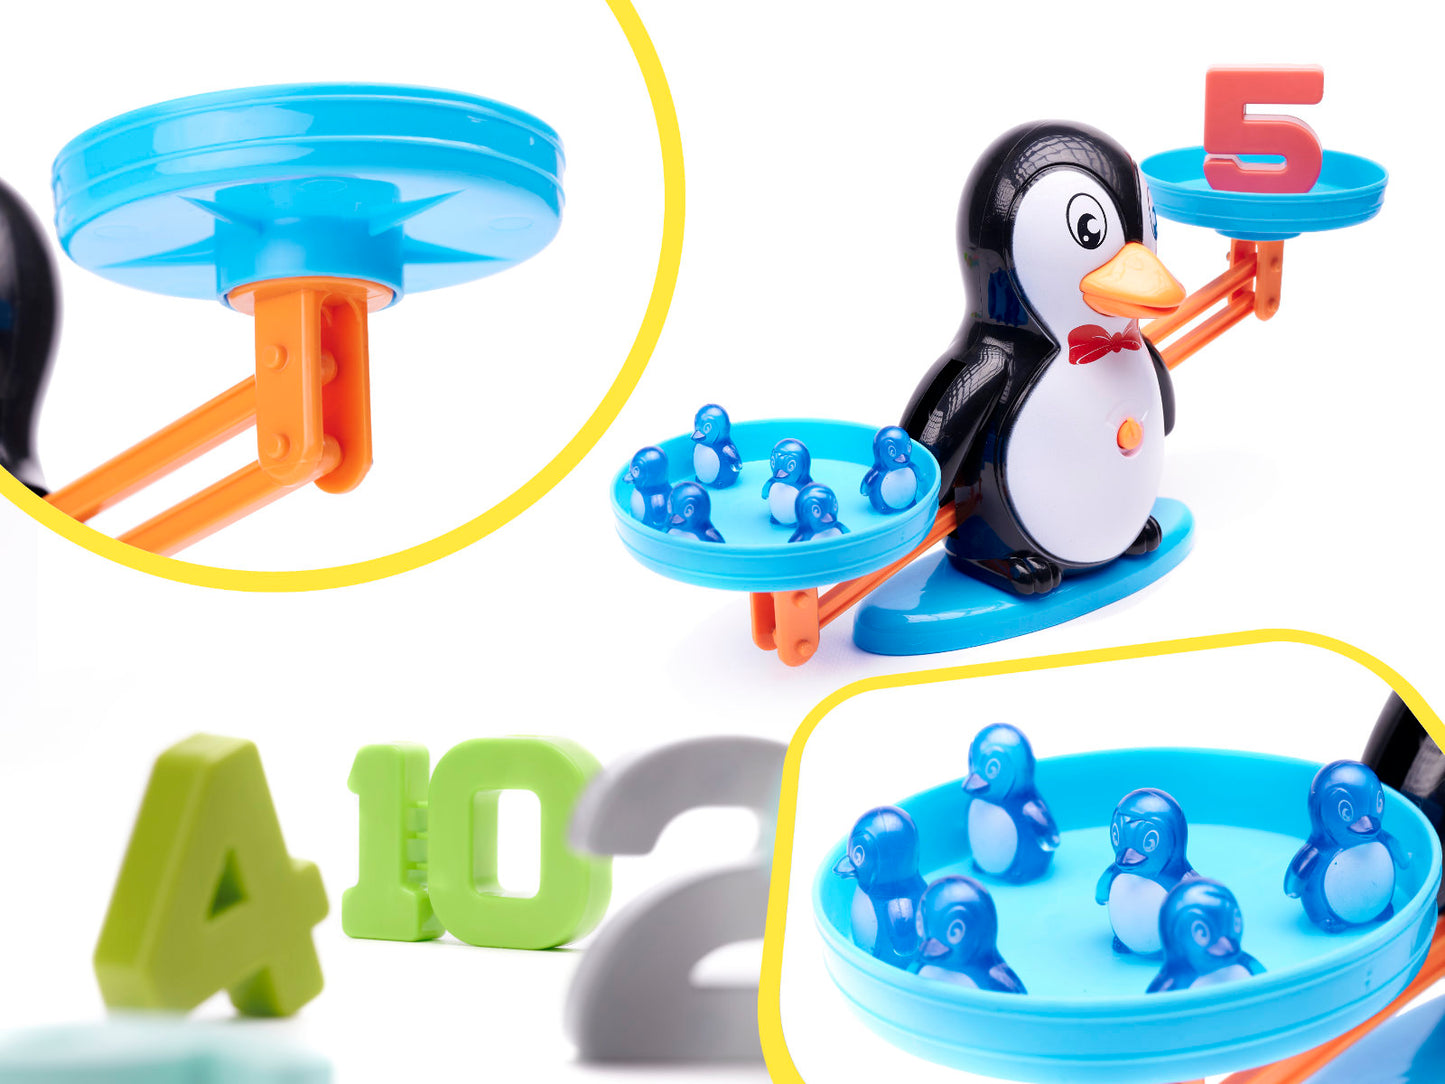 Svariņi: matemātikas spēle ar pingvīniņu svēršanu